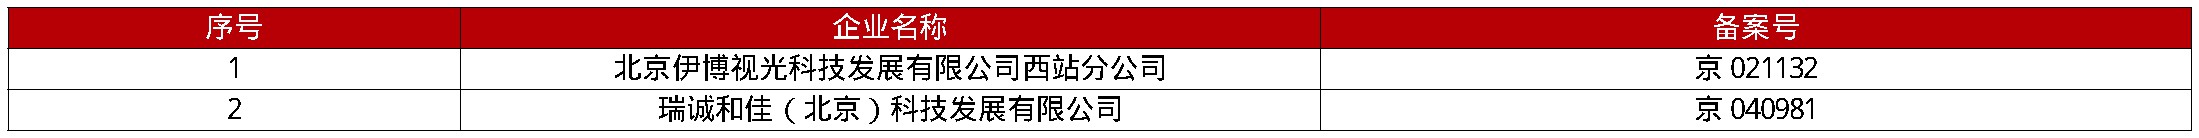 北京市食品药品监督管理局铁路车站地区分局关于拟注销《医疗器械经营许可证